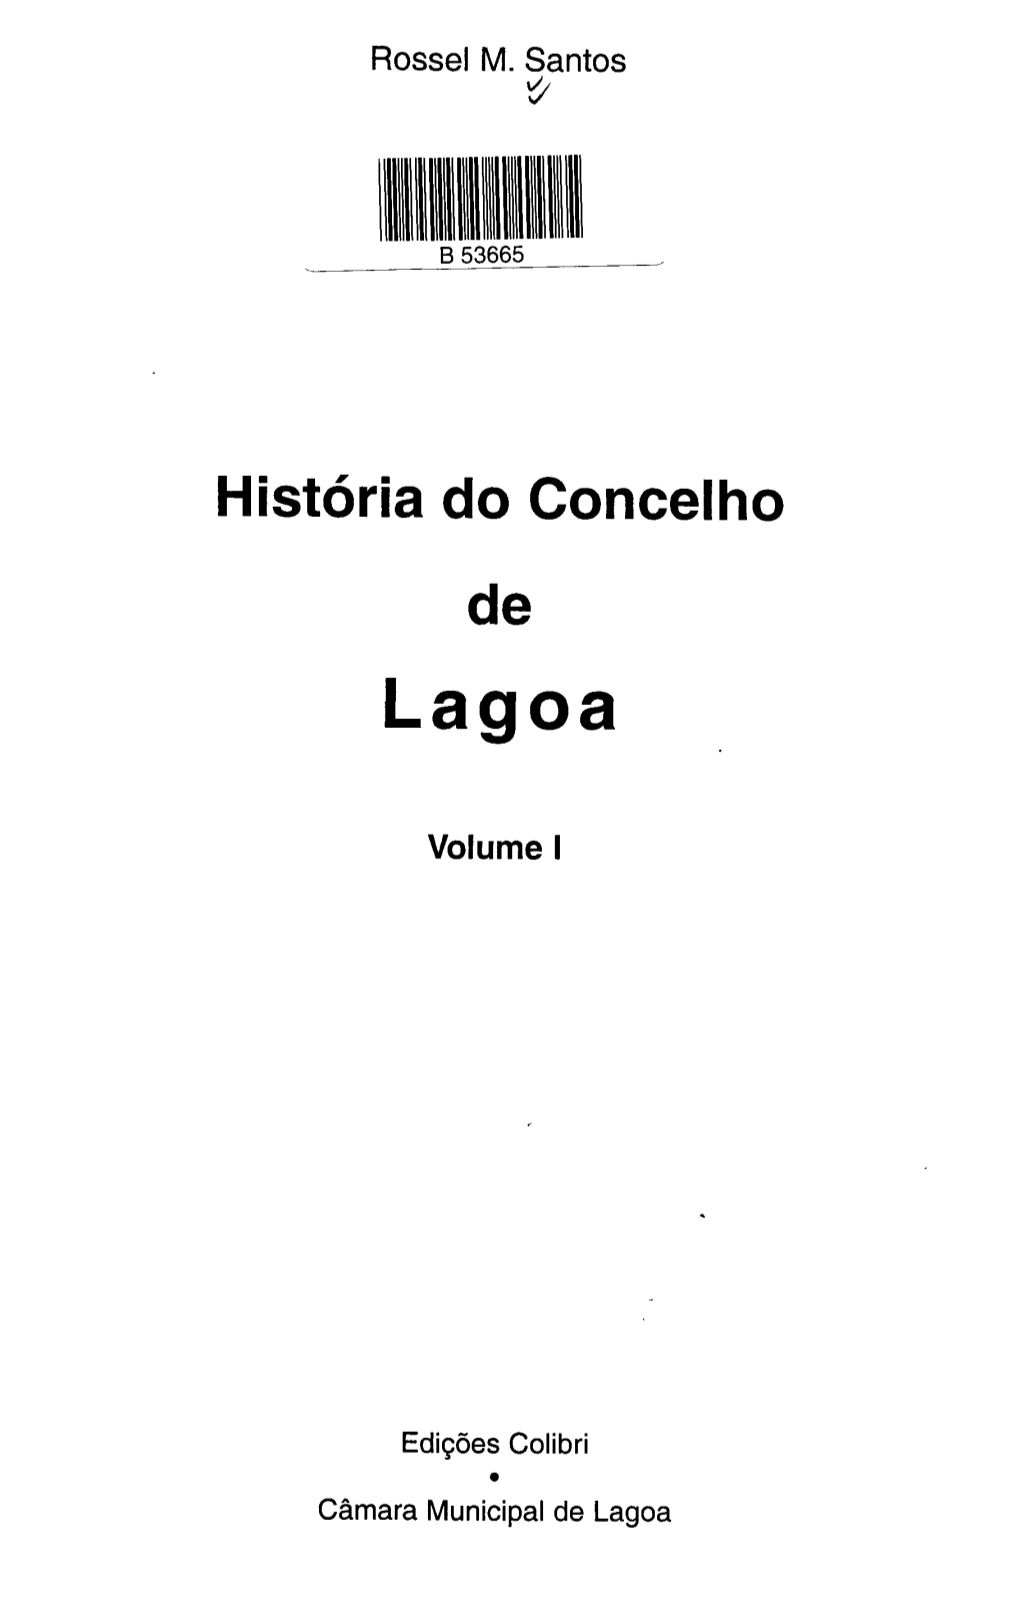 História Do Concelho De Lagoa